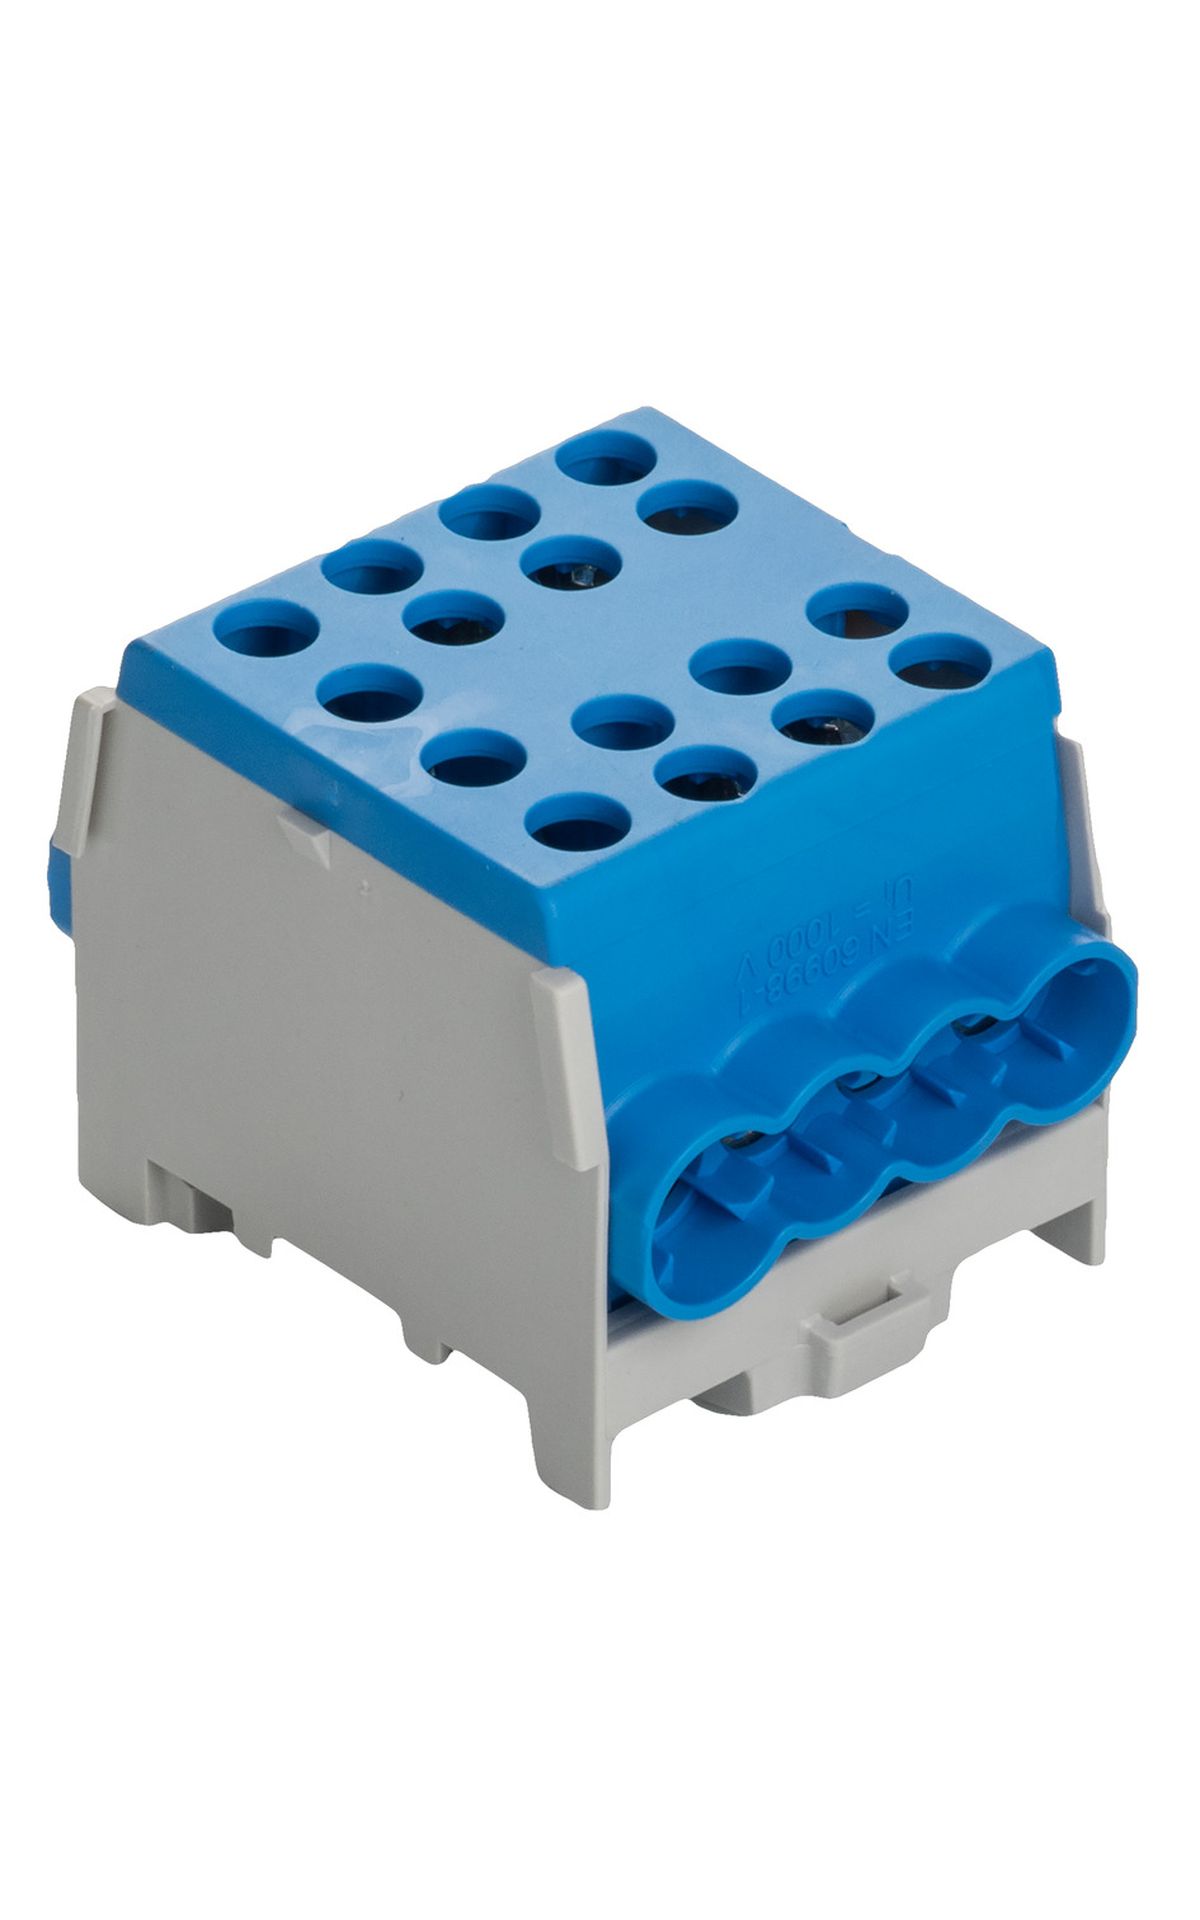 Minimodular HLAK 35-1/6 M2 fővezeték soroló elem kék